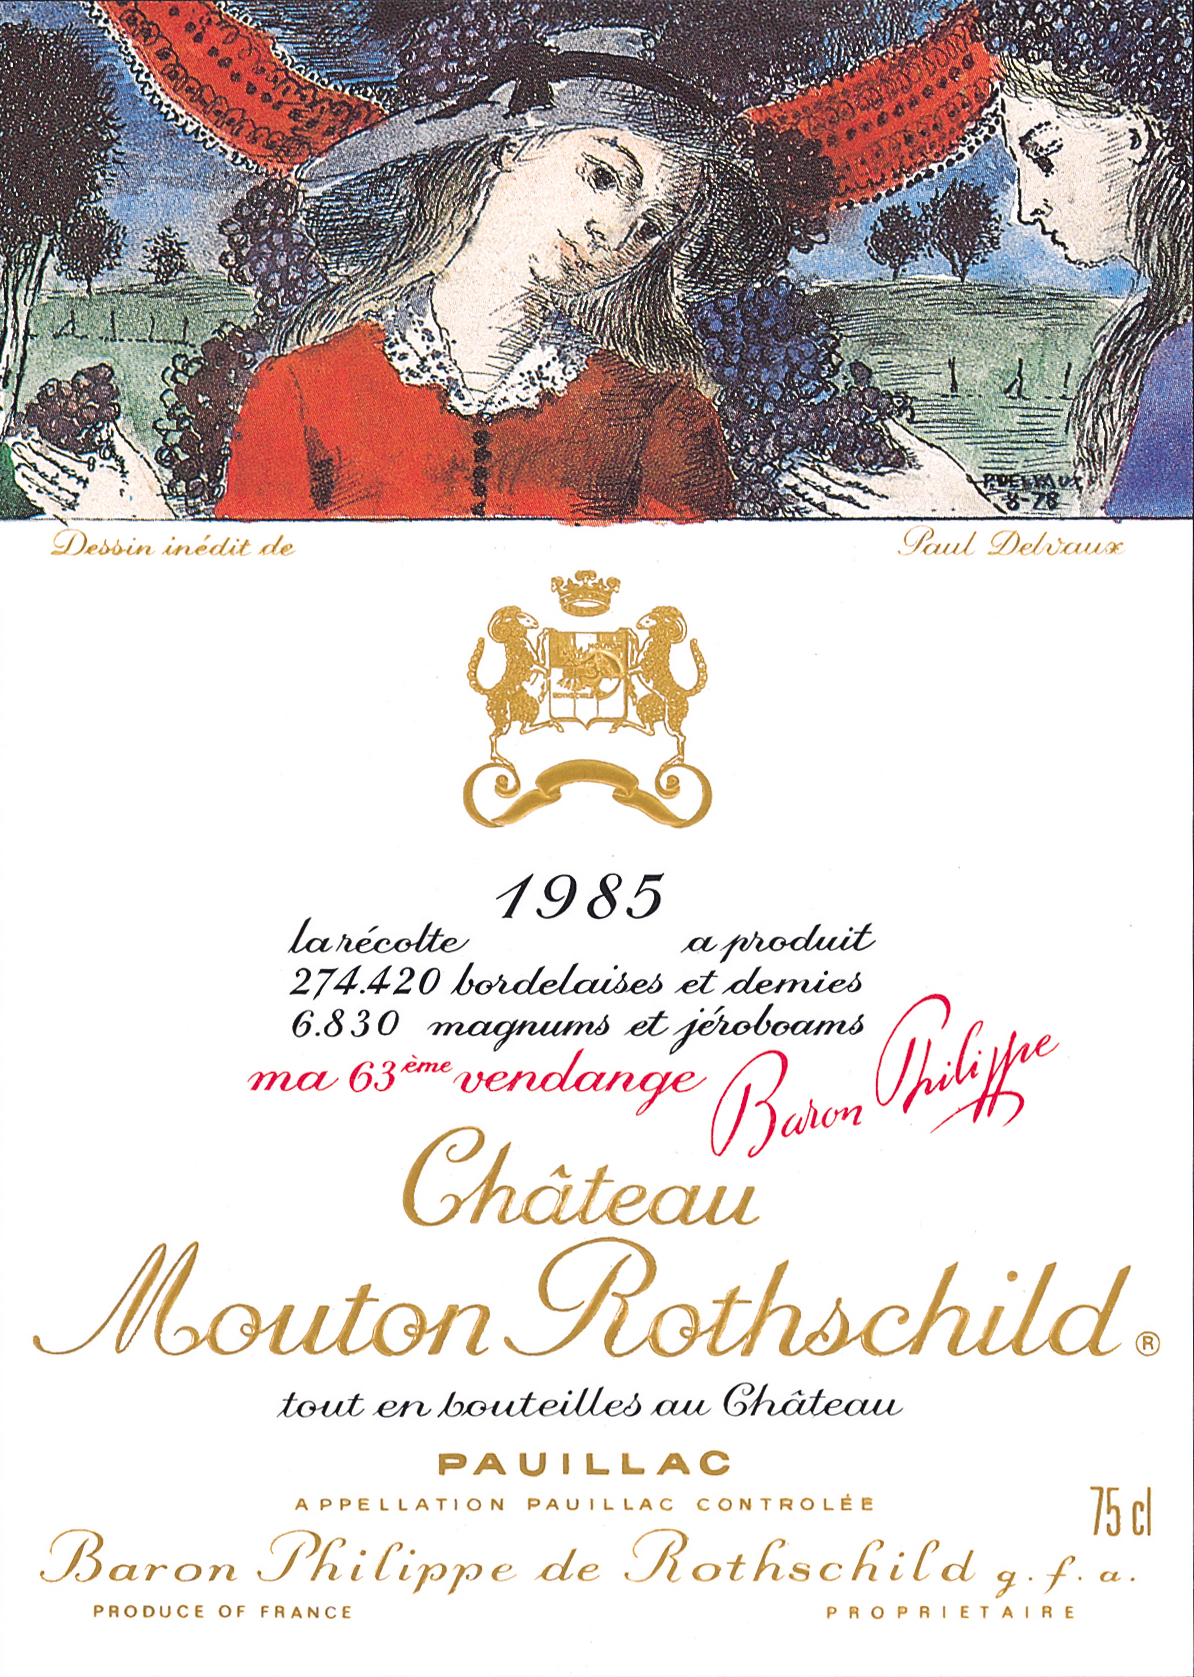 Paul Delvaux - Etiquette Mouton Rothschild 1985